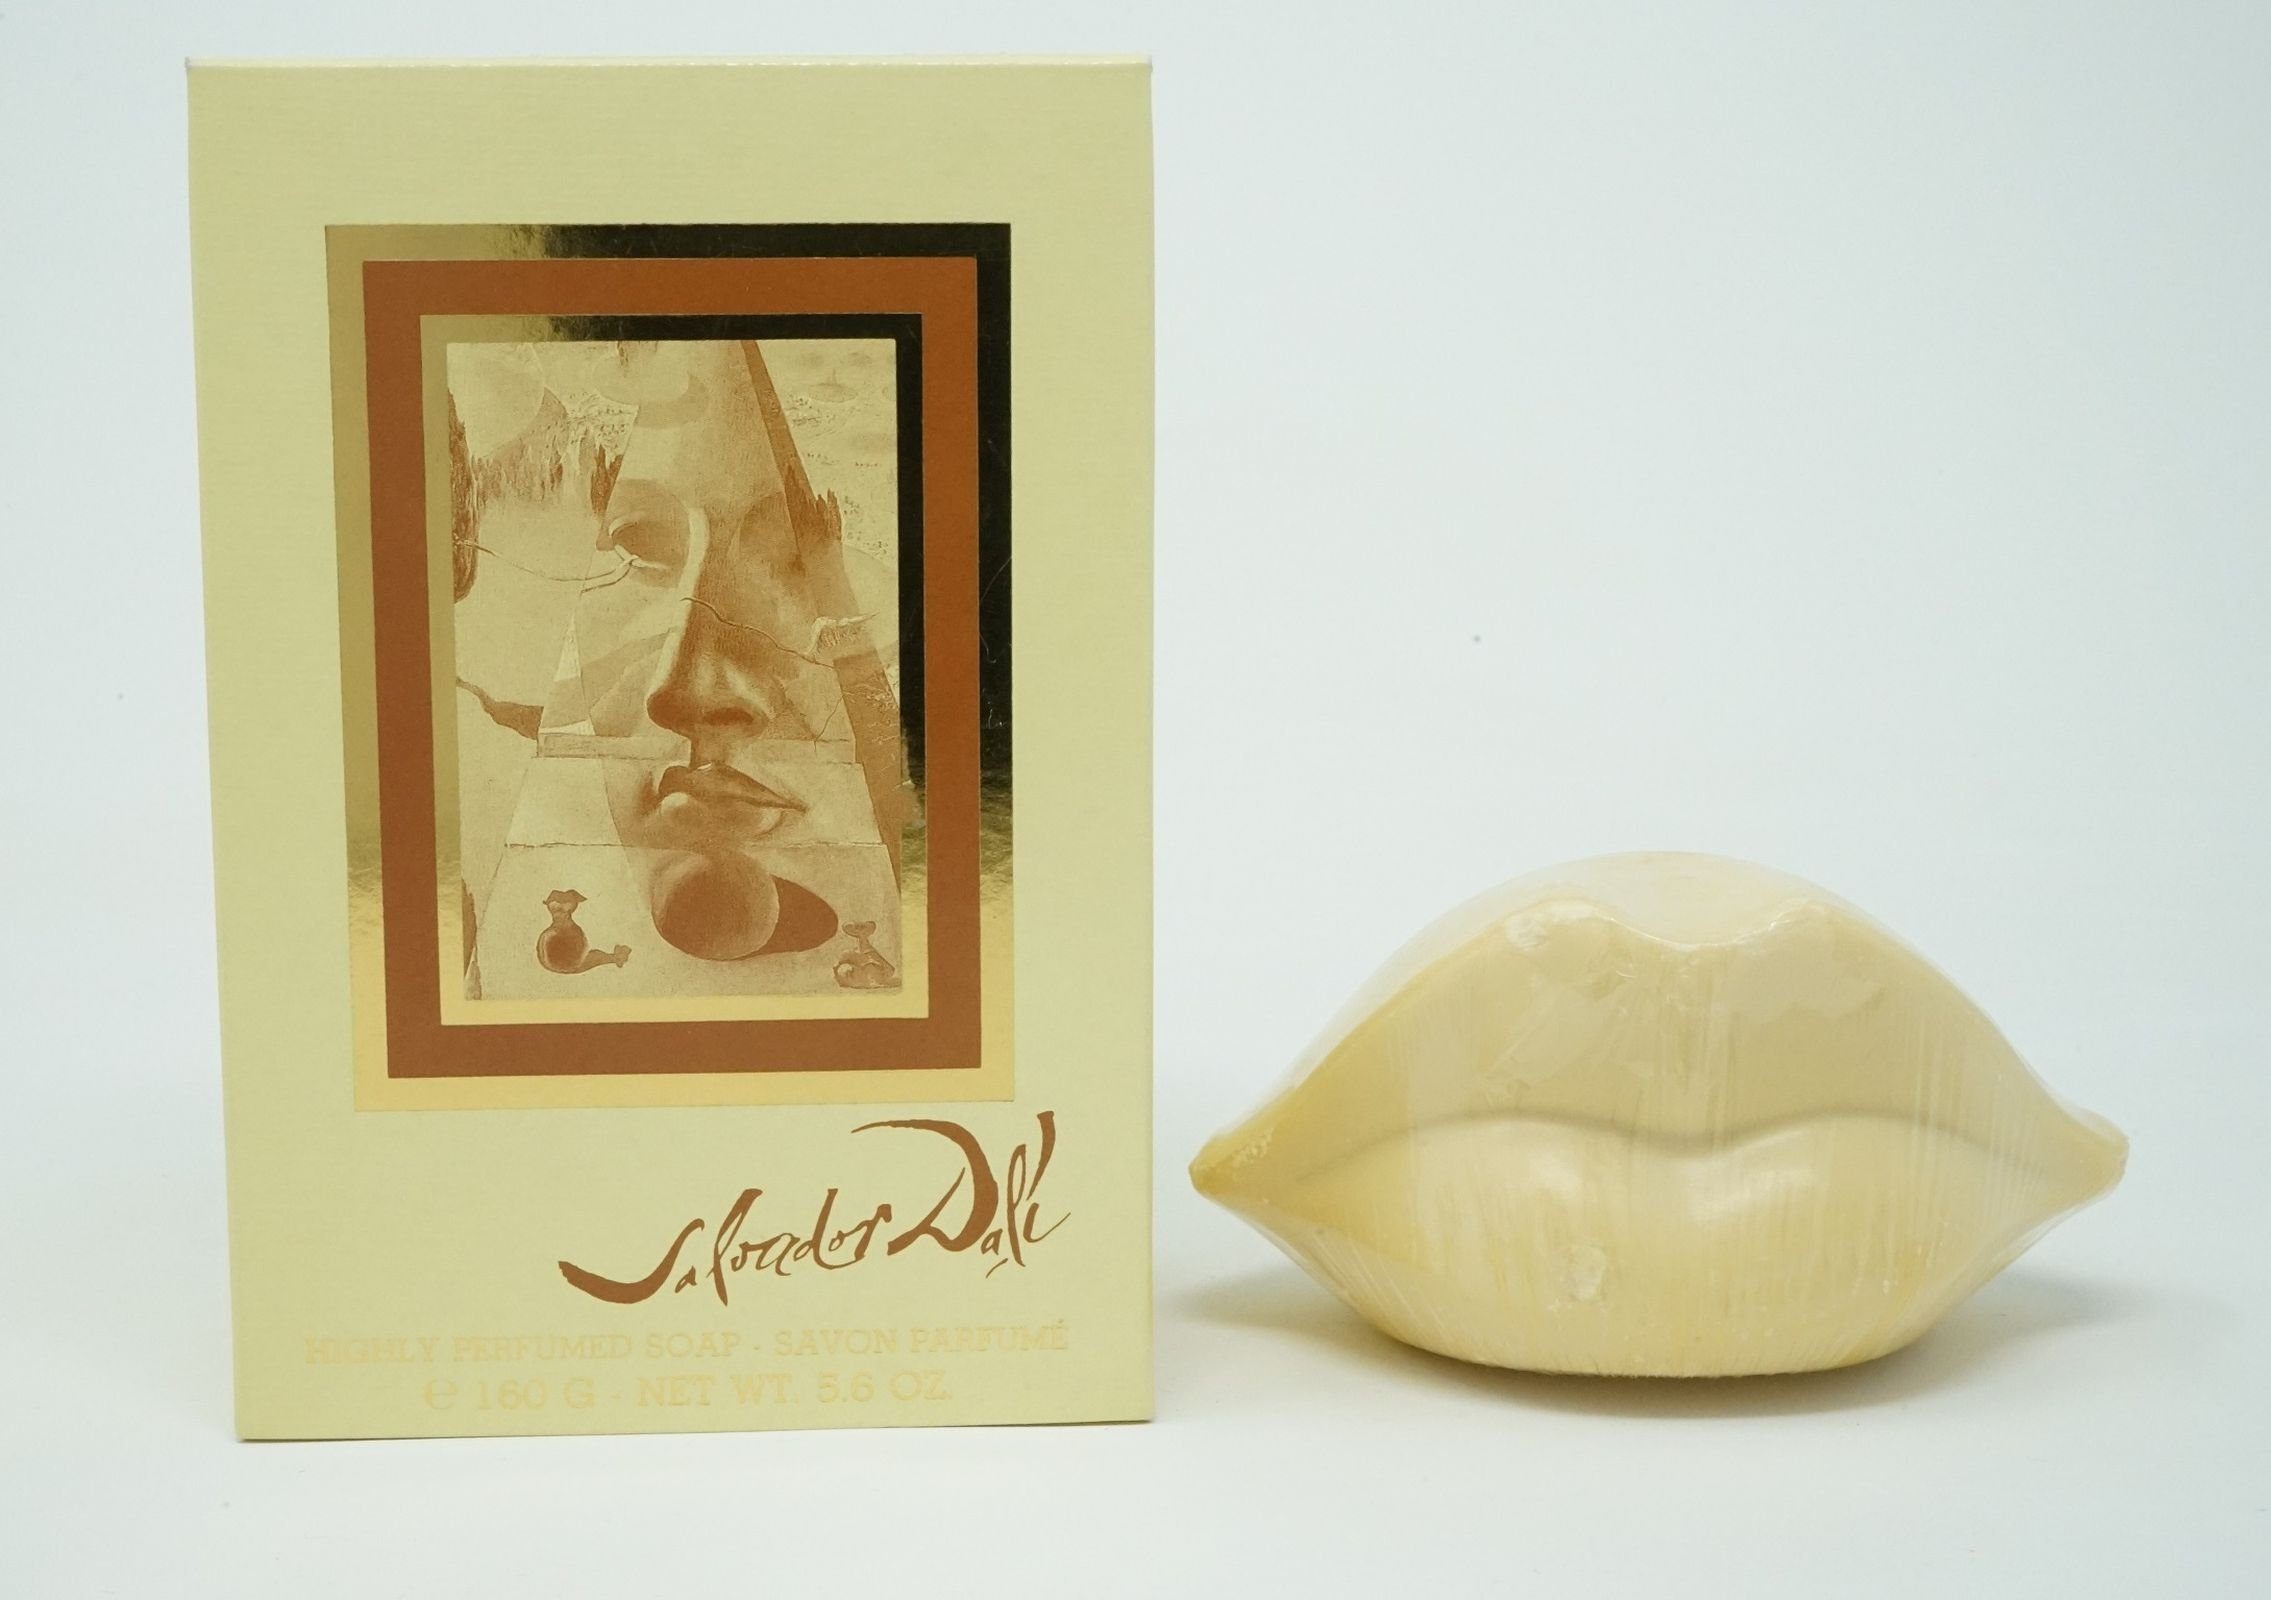 Soap Seife Dali 160g Perfumed / Dali Salvador Salvador Handseife Highly